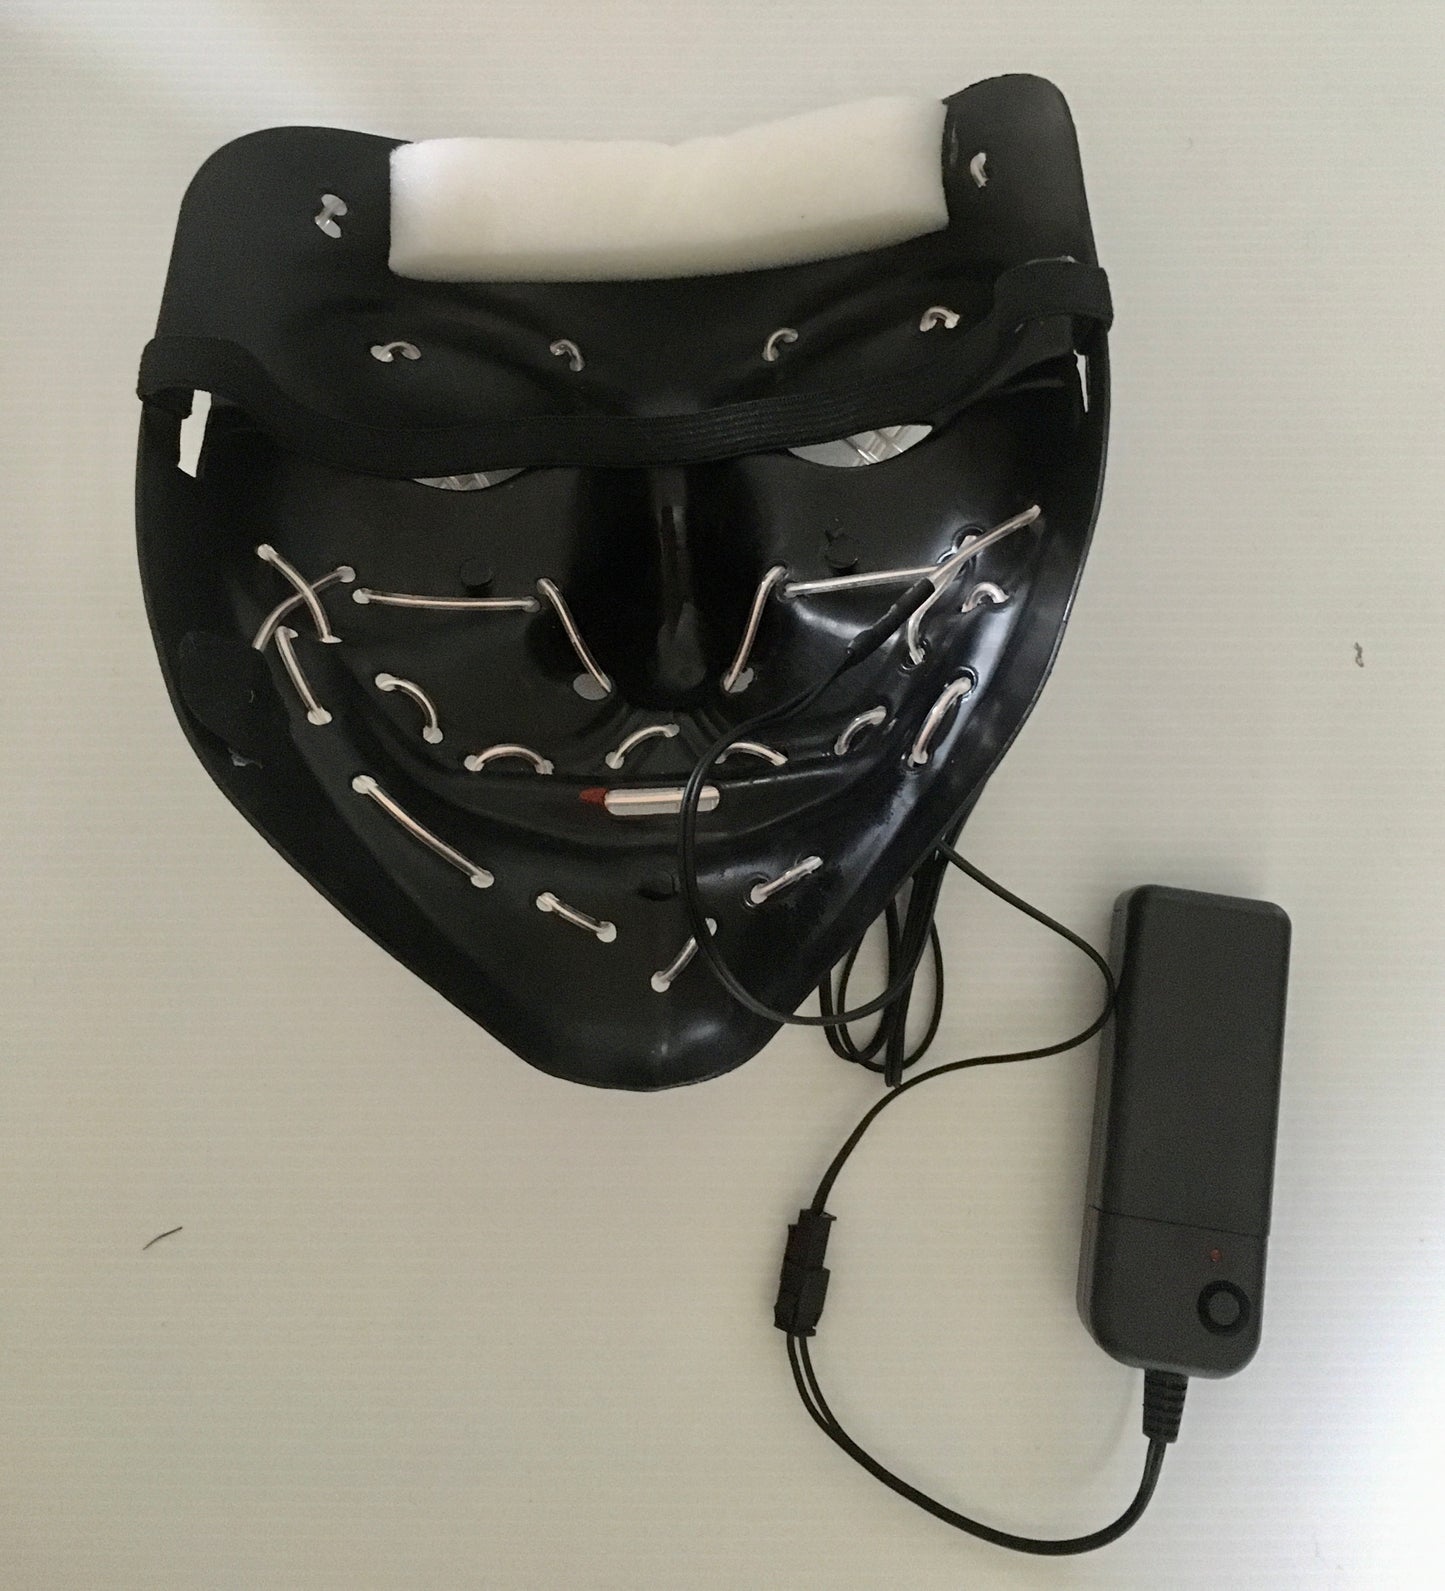 Masquerade / party mask